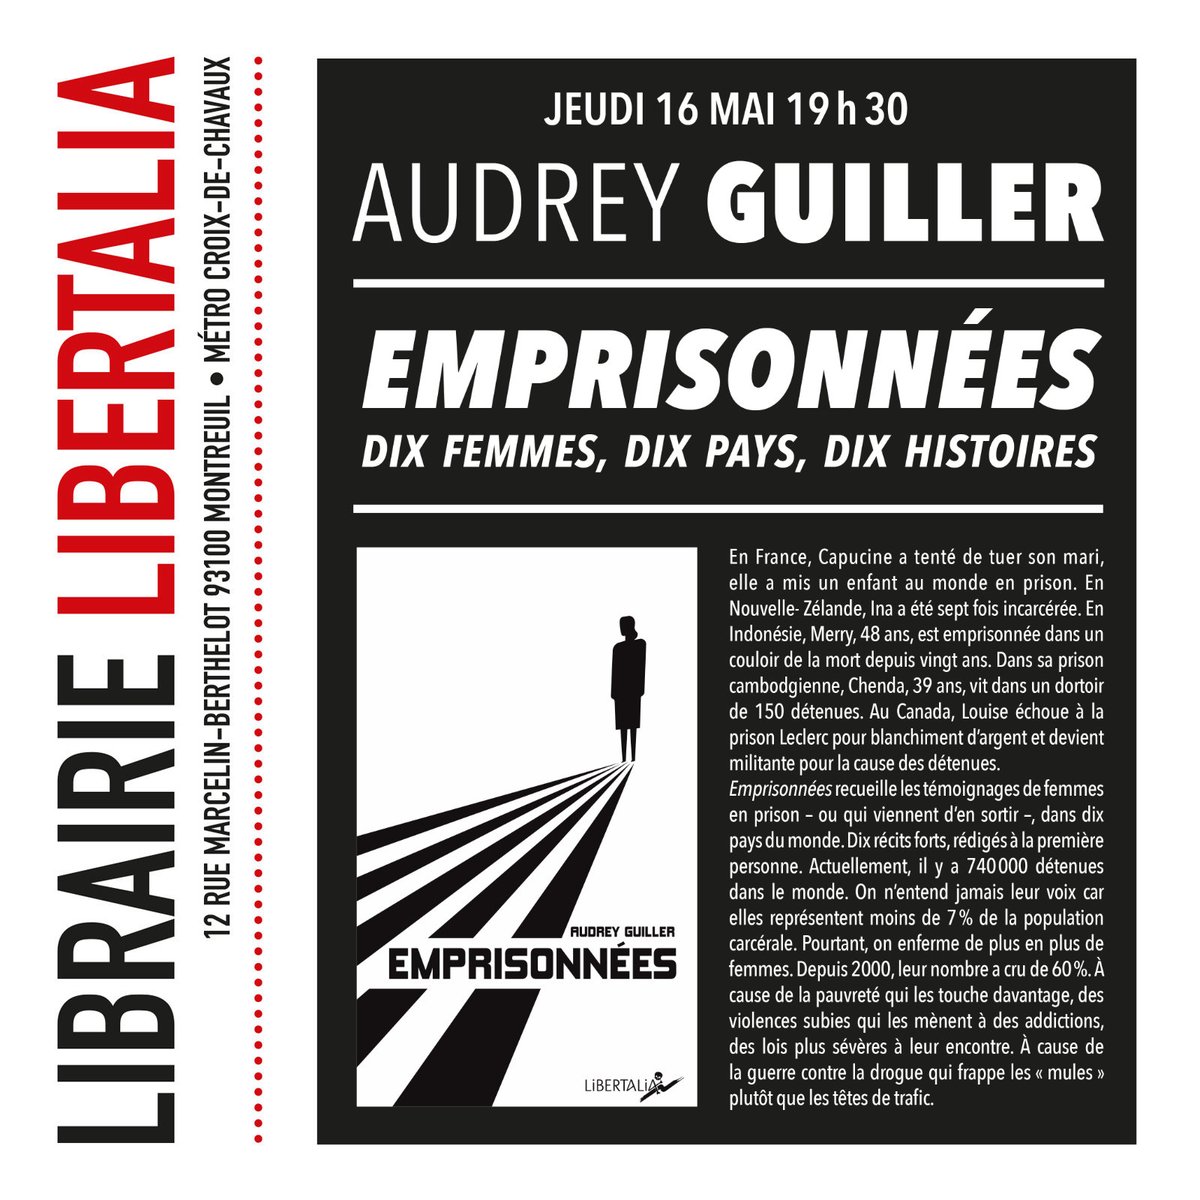 Pas de rencontre à la librairie Libertalia la semaine prochaine, mais on se retrouve jeudi 16 mai avec Audrey Guiller pour le lancement de son livre sur les femmes emprisonnées. #Montreuil editionslibertalia.com/catalogue/poch…